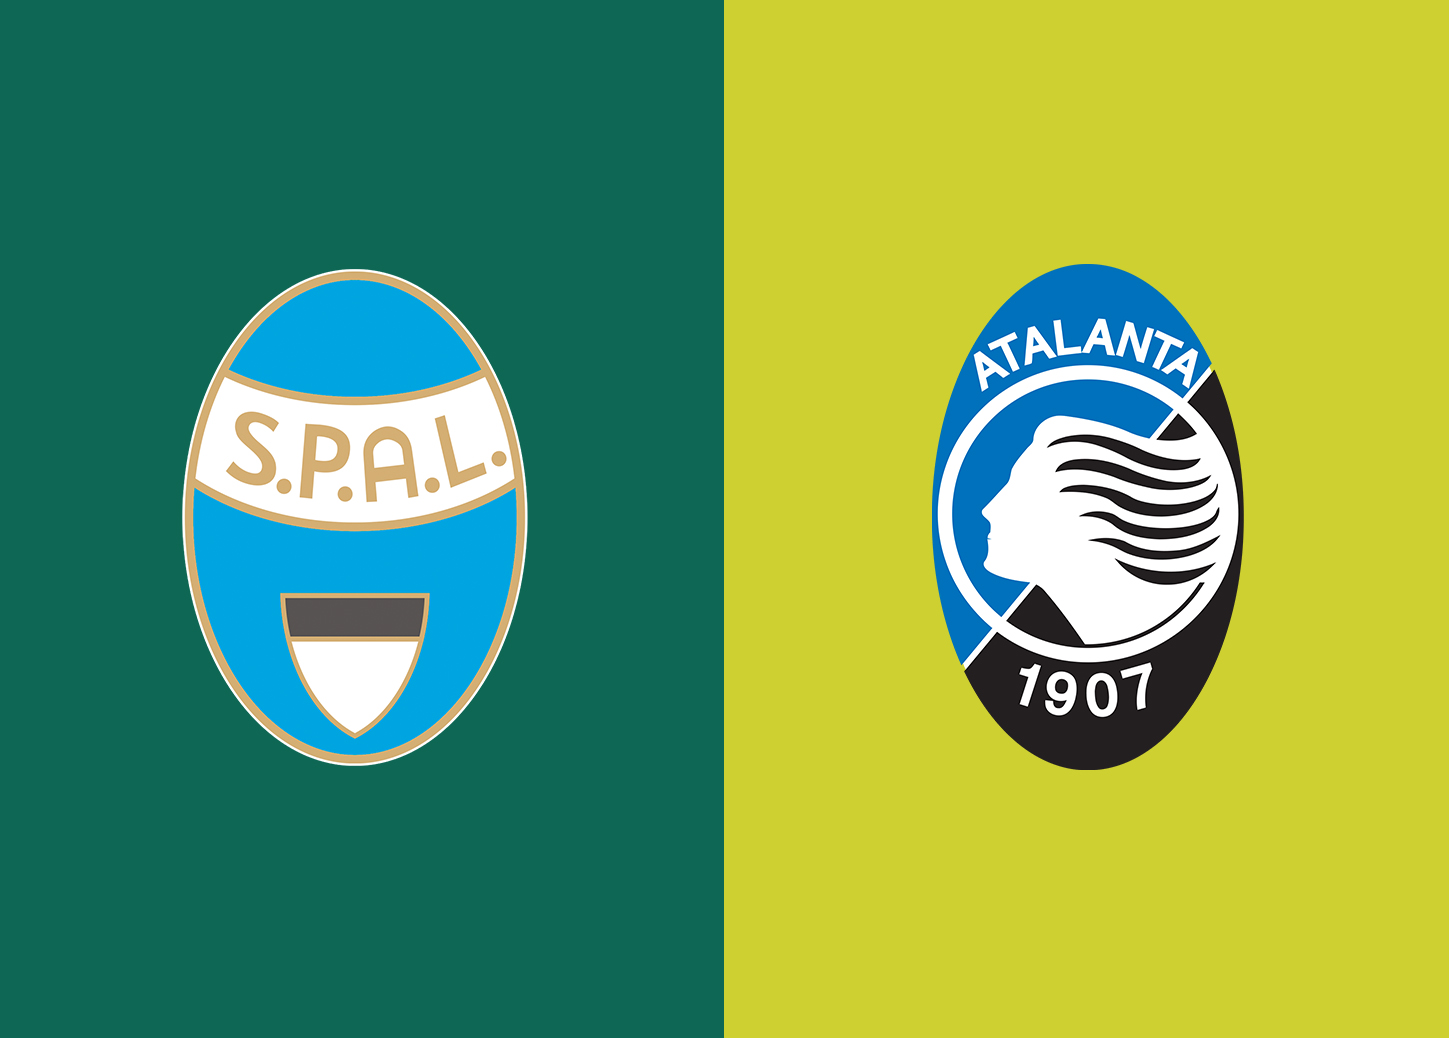 Dự đoán tỷ số trận đấu giữa Atalanta - SPAL  02h45’ 21/01/2020 cùng Keo8